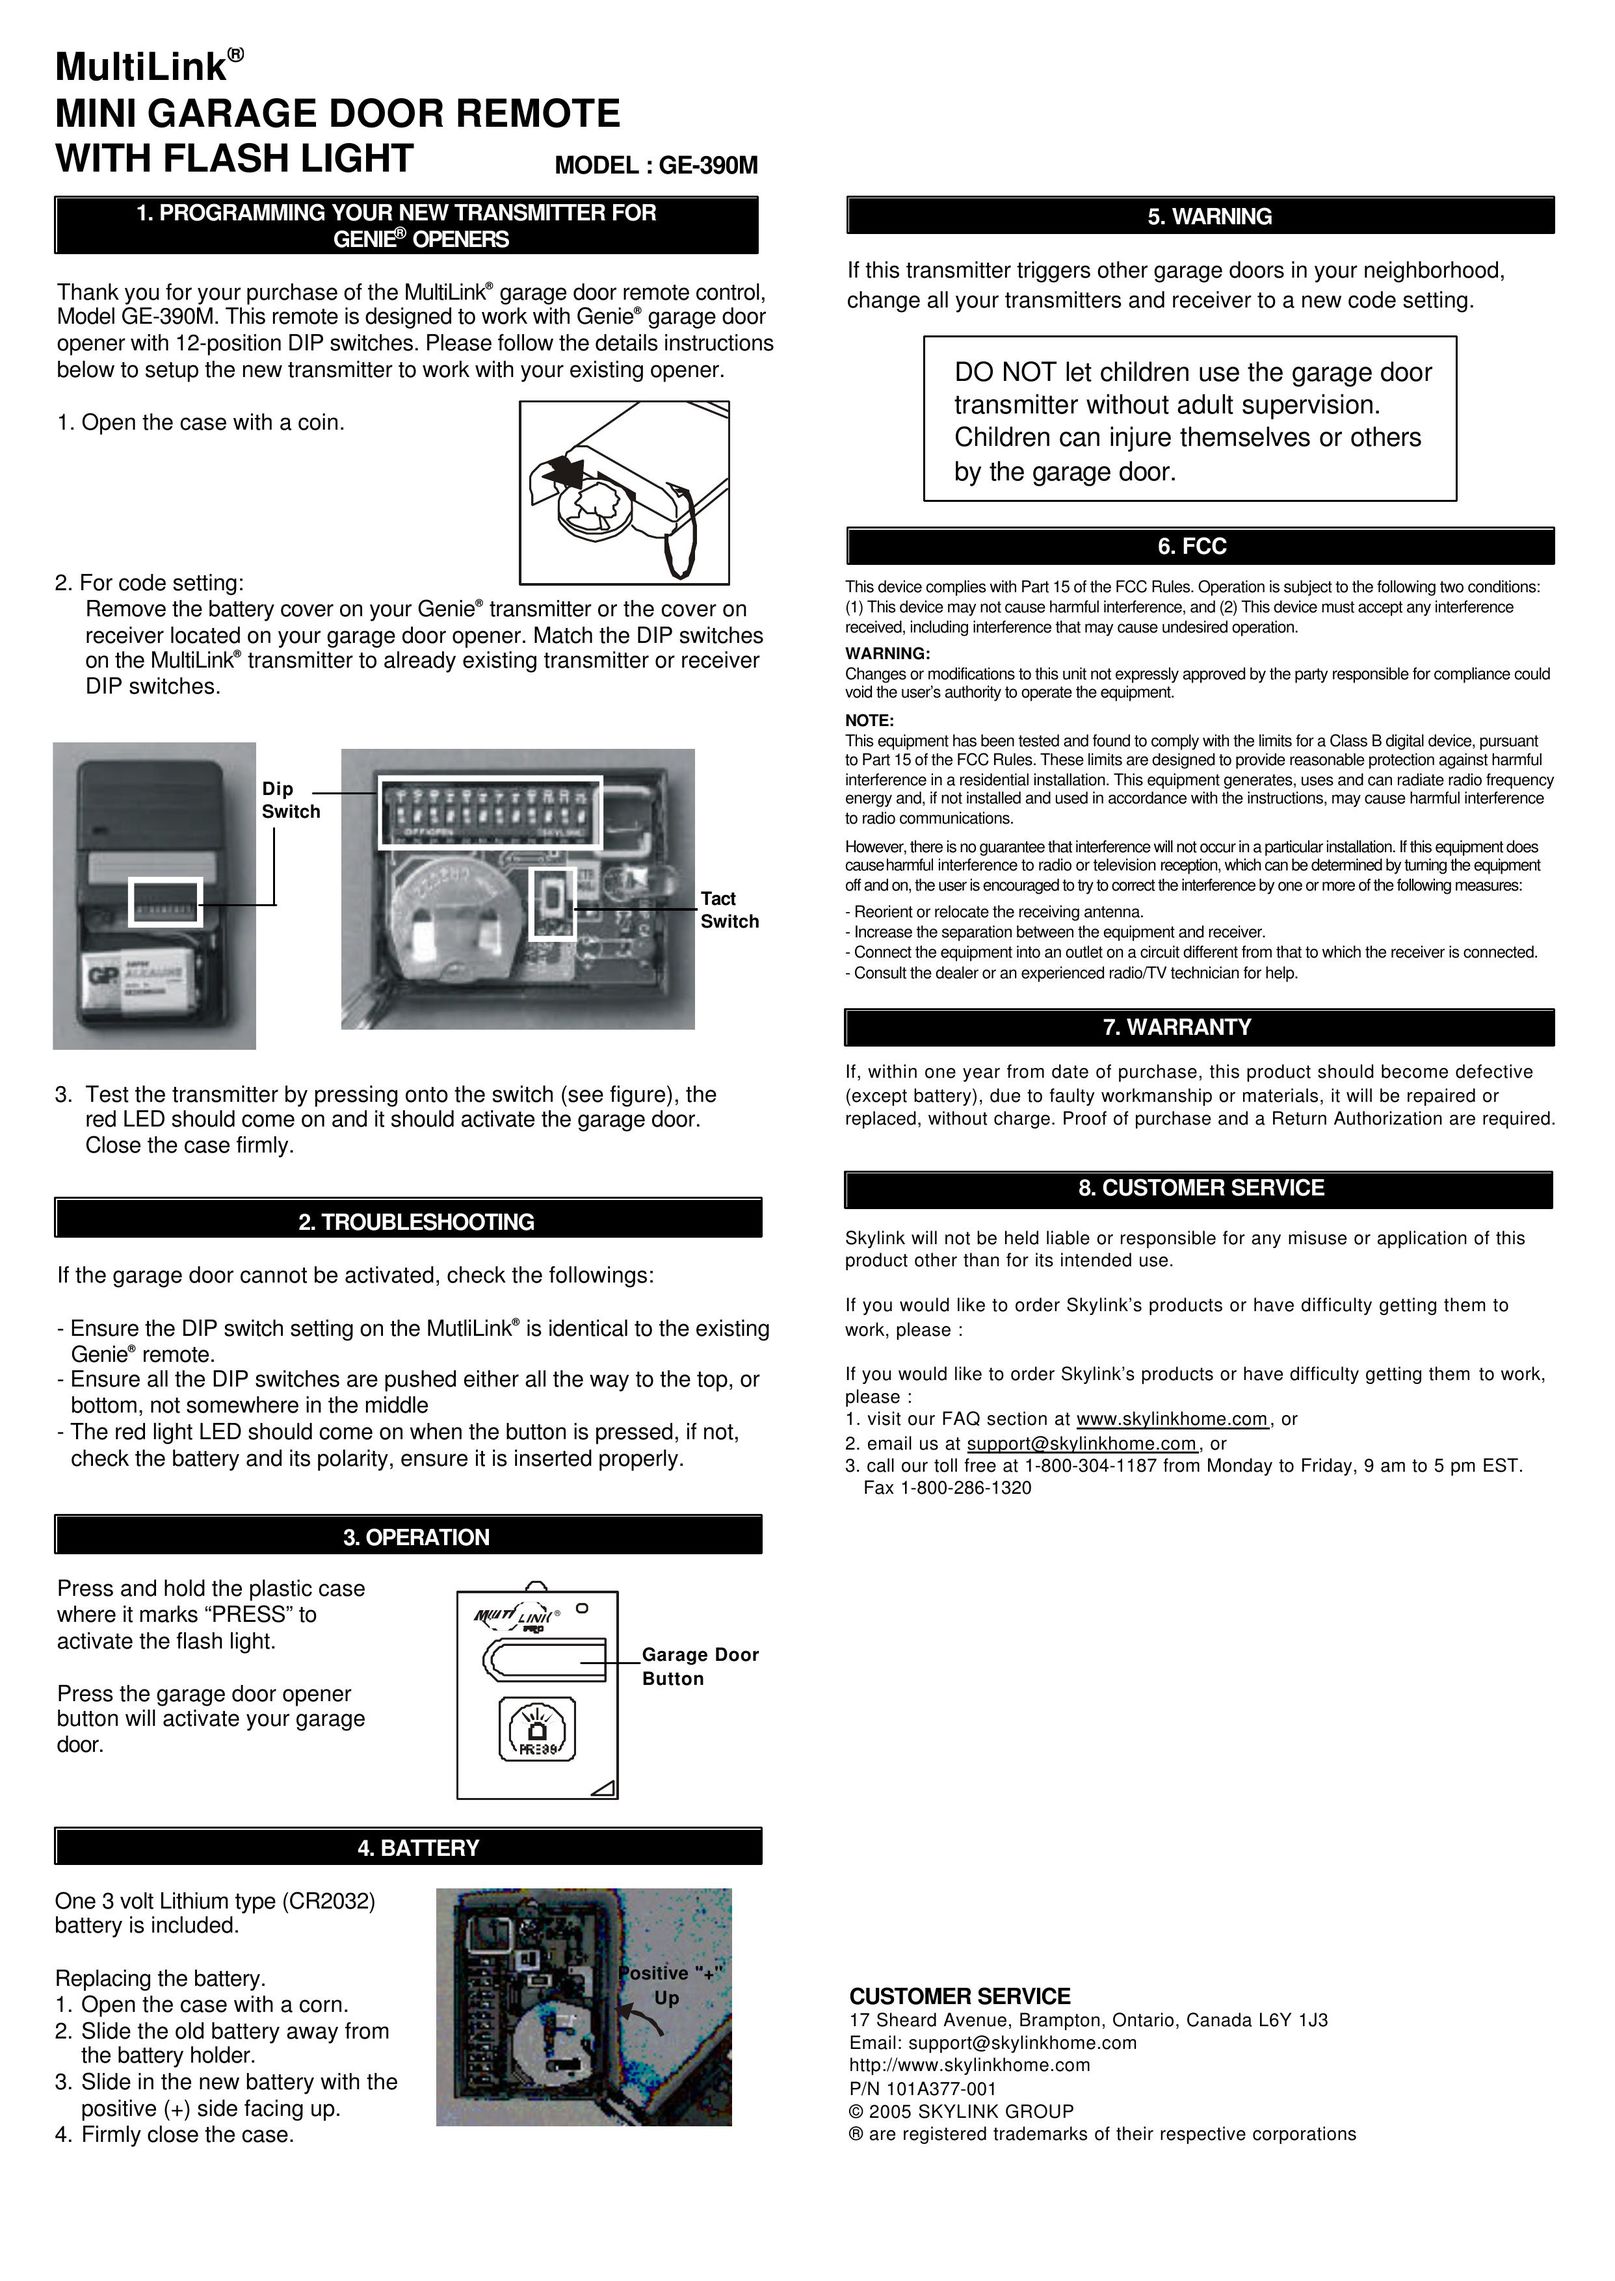 Multi-Link GE-390M Garage Door Opener User Manual